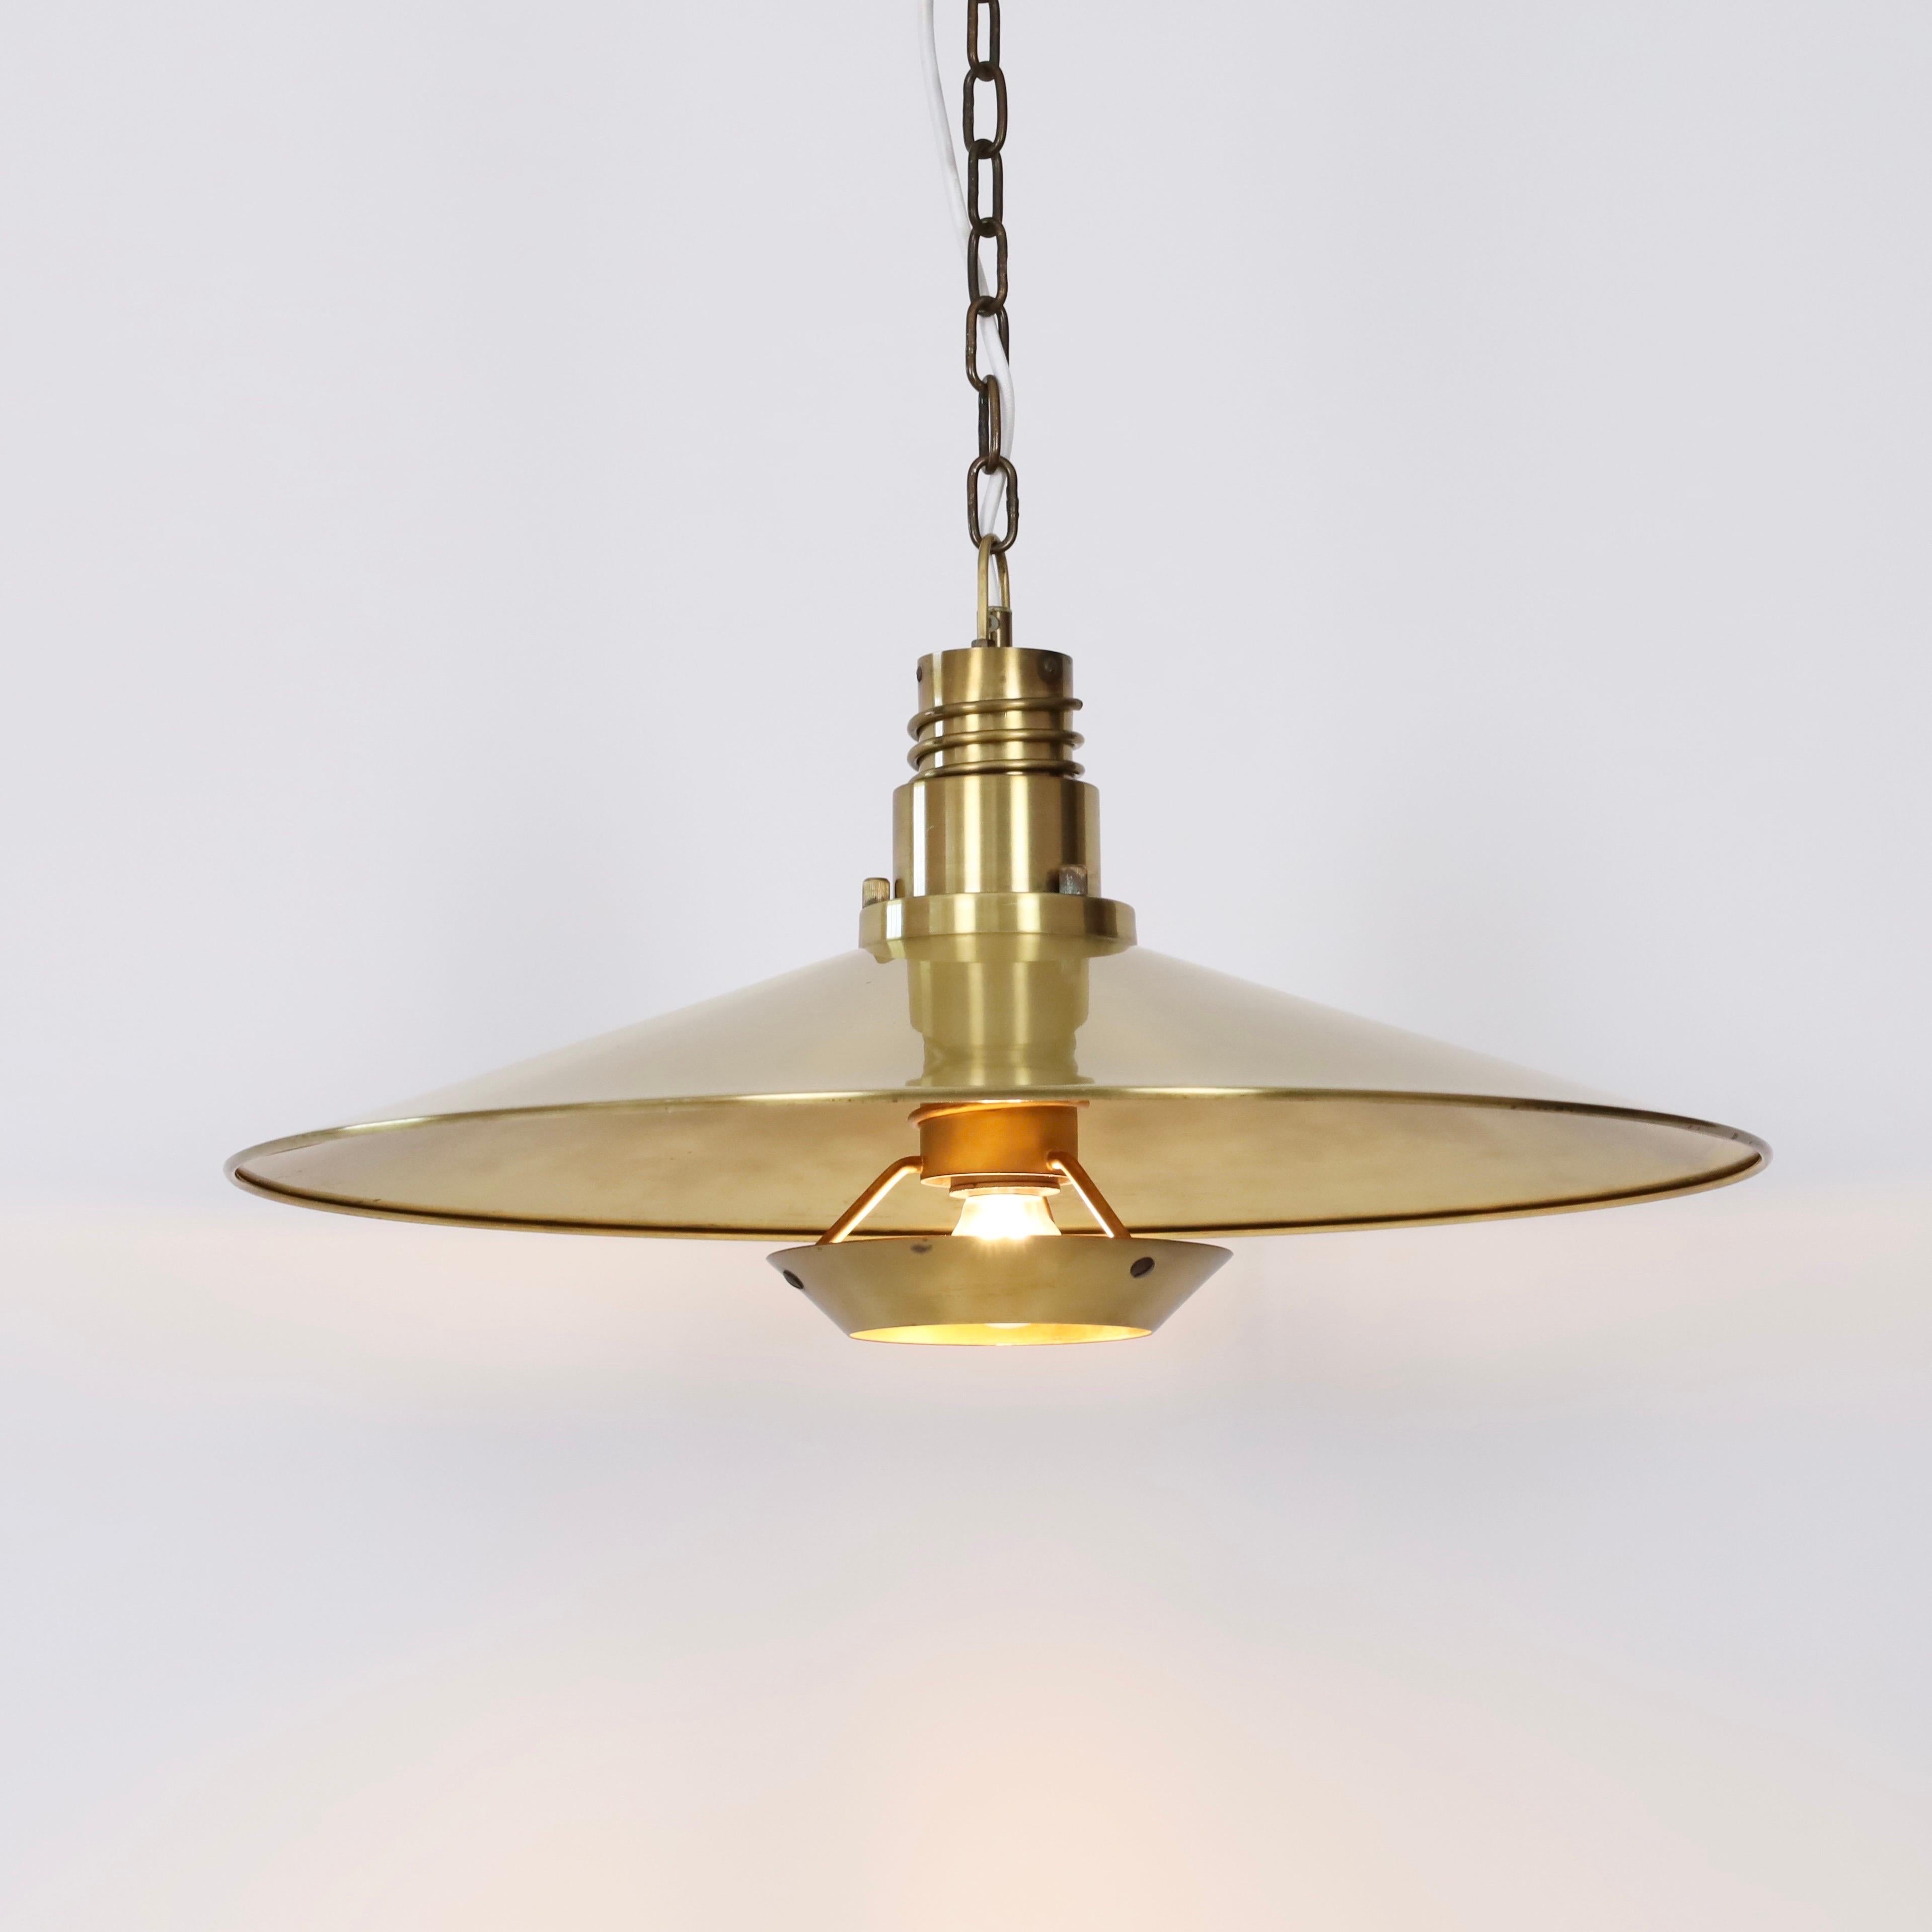 Substantial Danish Modern Brass Pendant Light by Fog & Morup, 1960s, Denmark For Sale 2